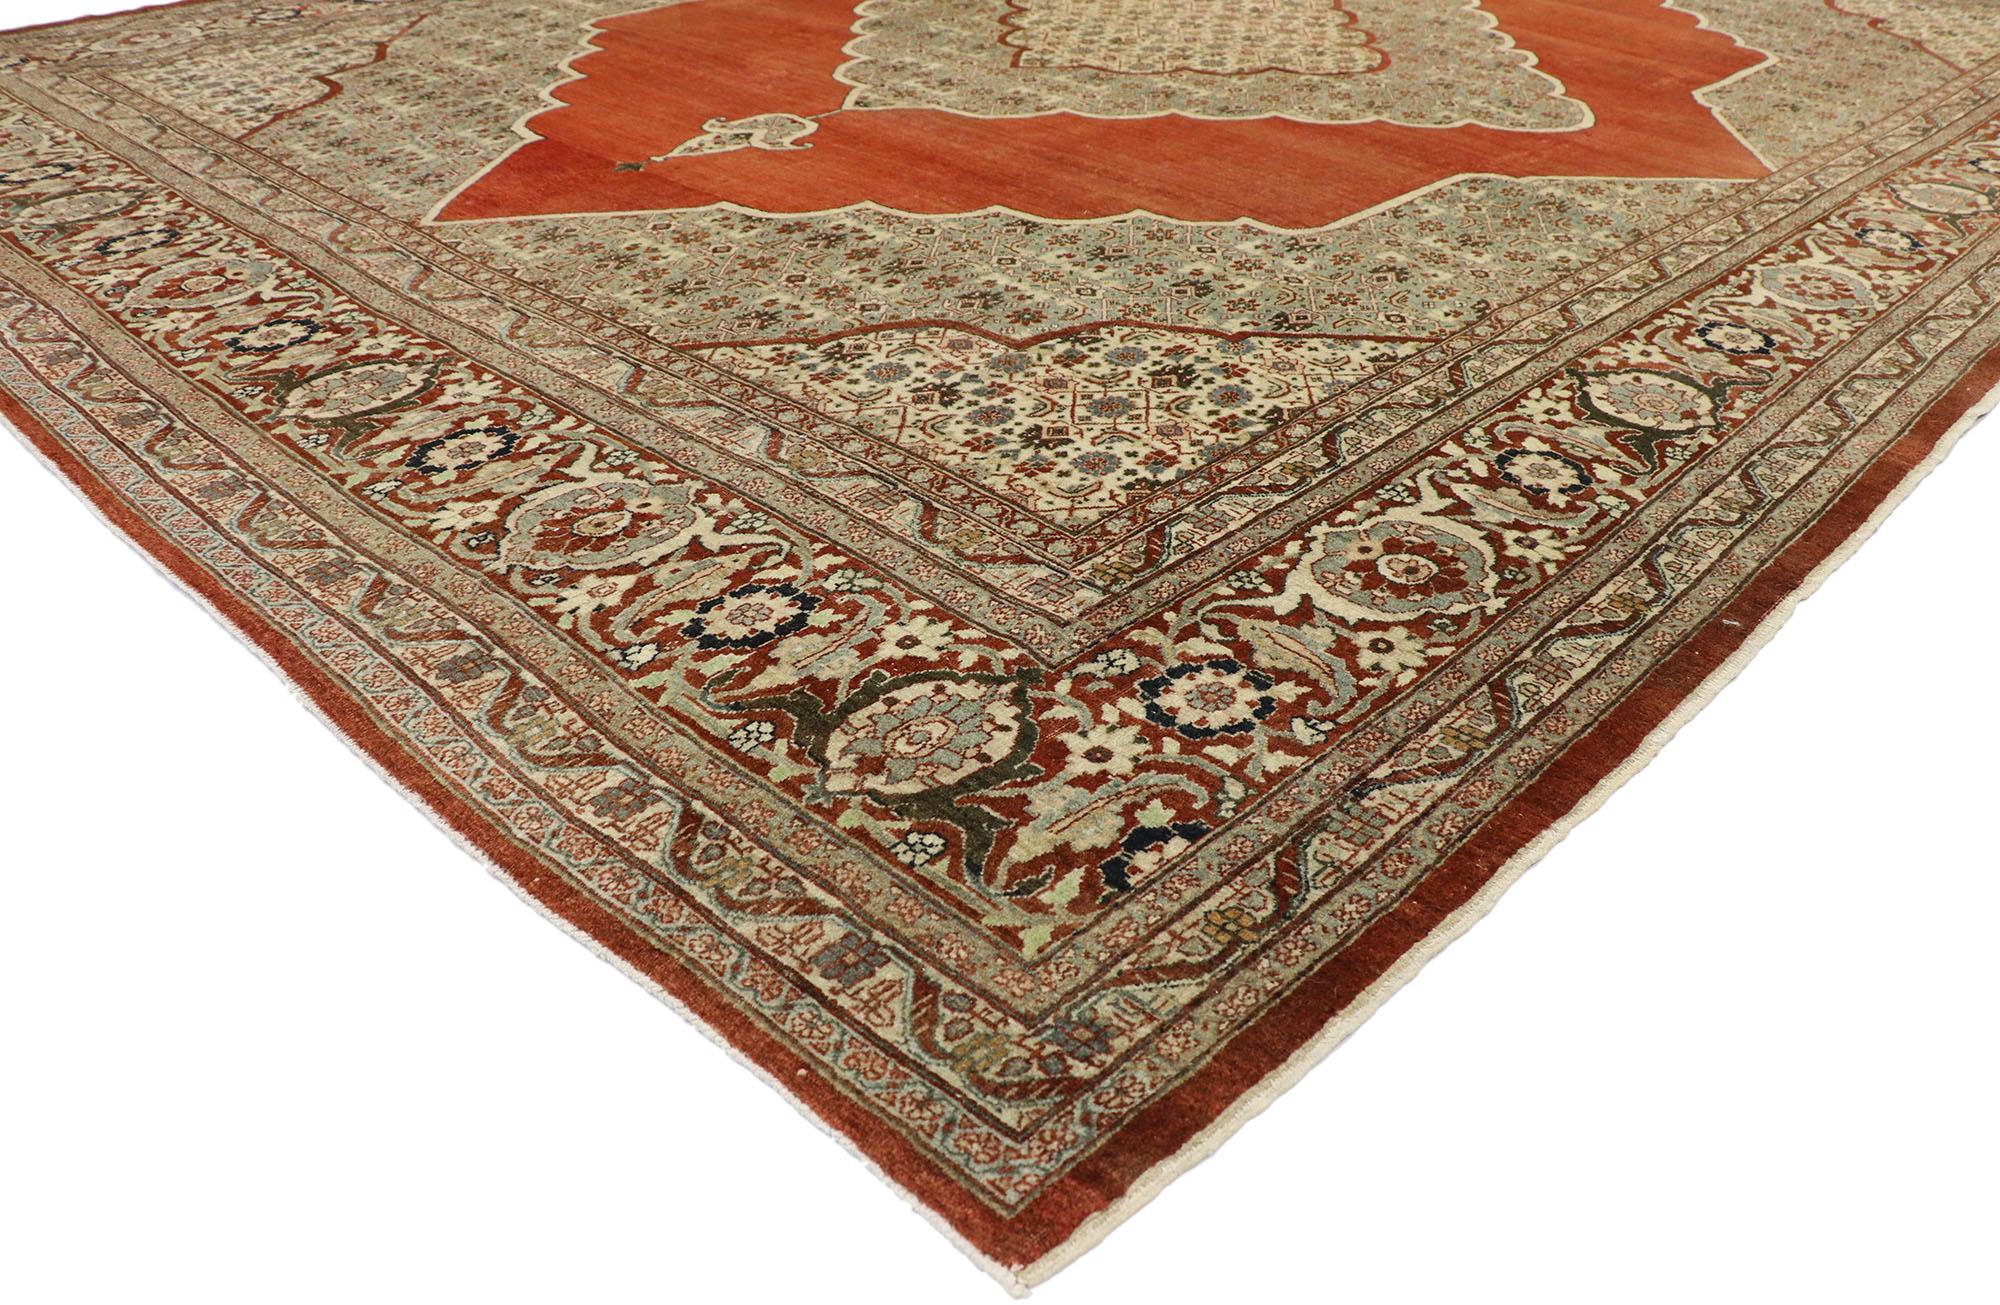 53482, Haji Khalili, tapis persan antique Tabriz, style manoir Tudor anglais. Avec ses couleurs chaudes dans les tons de la terre et ses détails ornés, ce tapis Tabriz persan ancien en laine Haji Khalili noué à la main est prêt à impressionner. Le